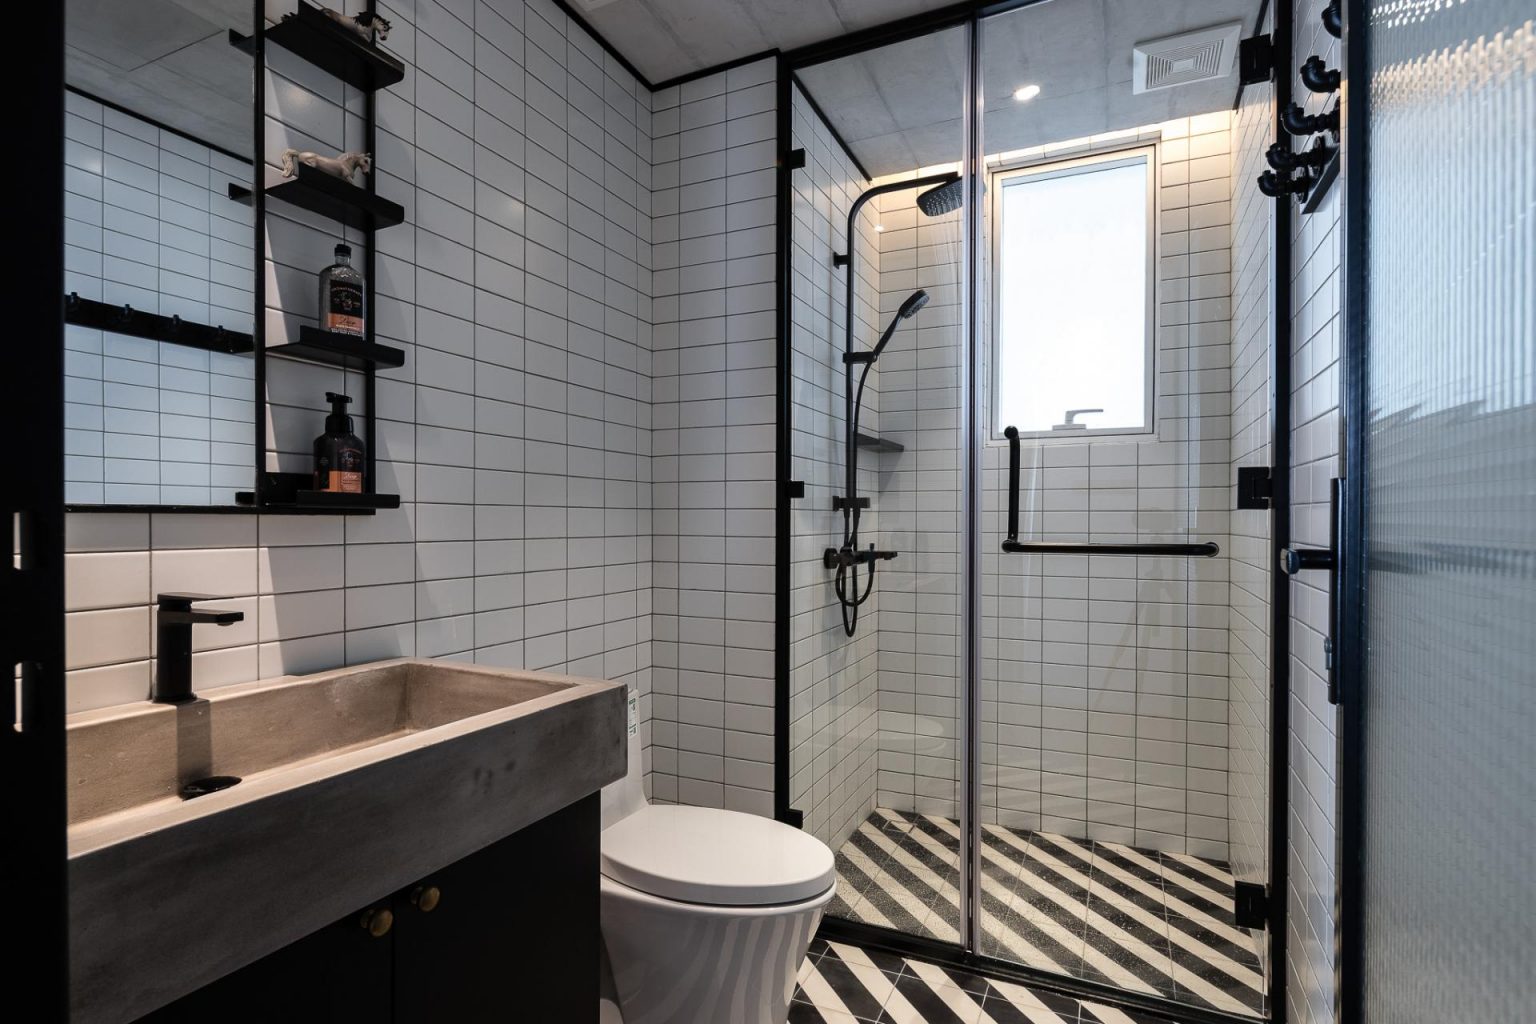 salle de bain design blanche et noire